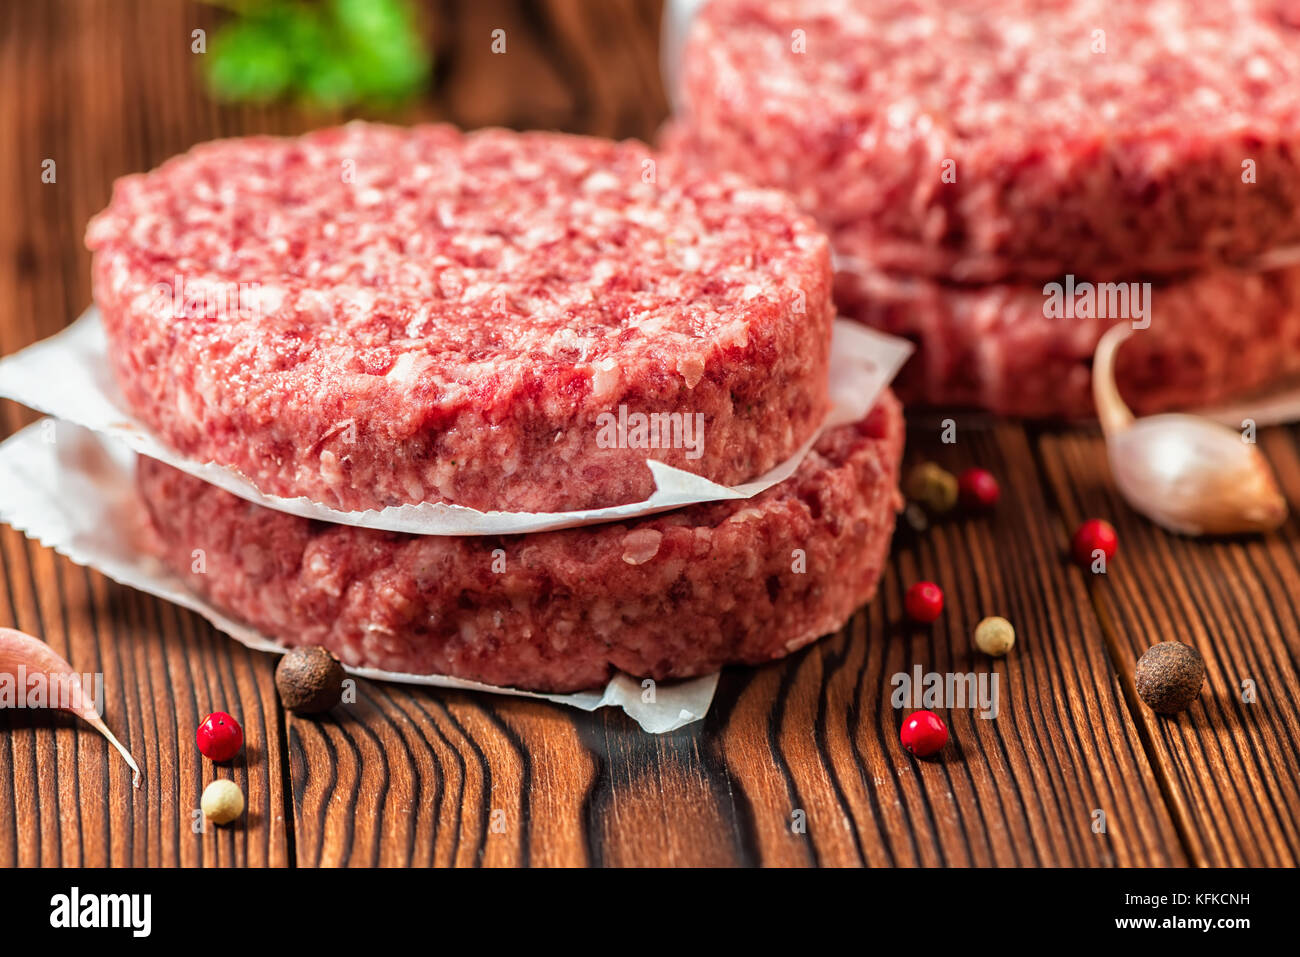 Rohes Rindfleisch Burger Steak, Schnitzel, chemische Pfeffer und Knoblauch auf ländlichen Holz- Hintergrund Stockfoto